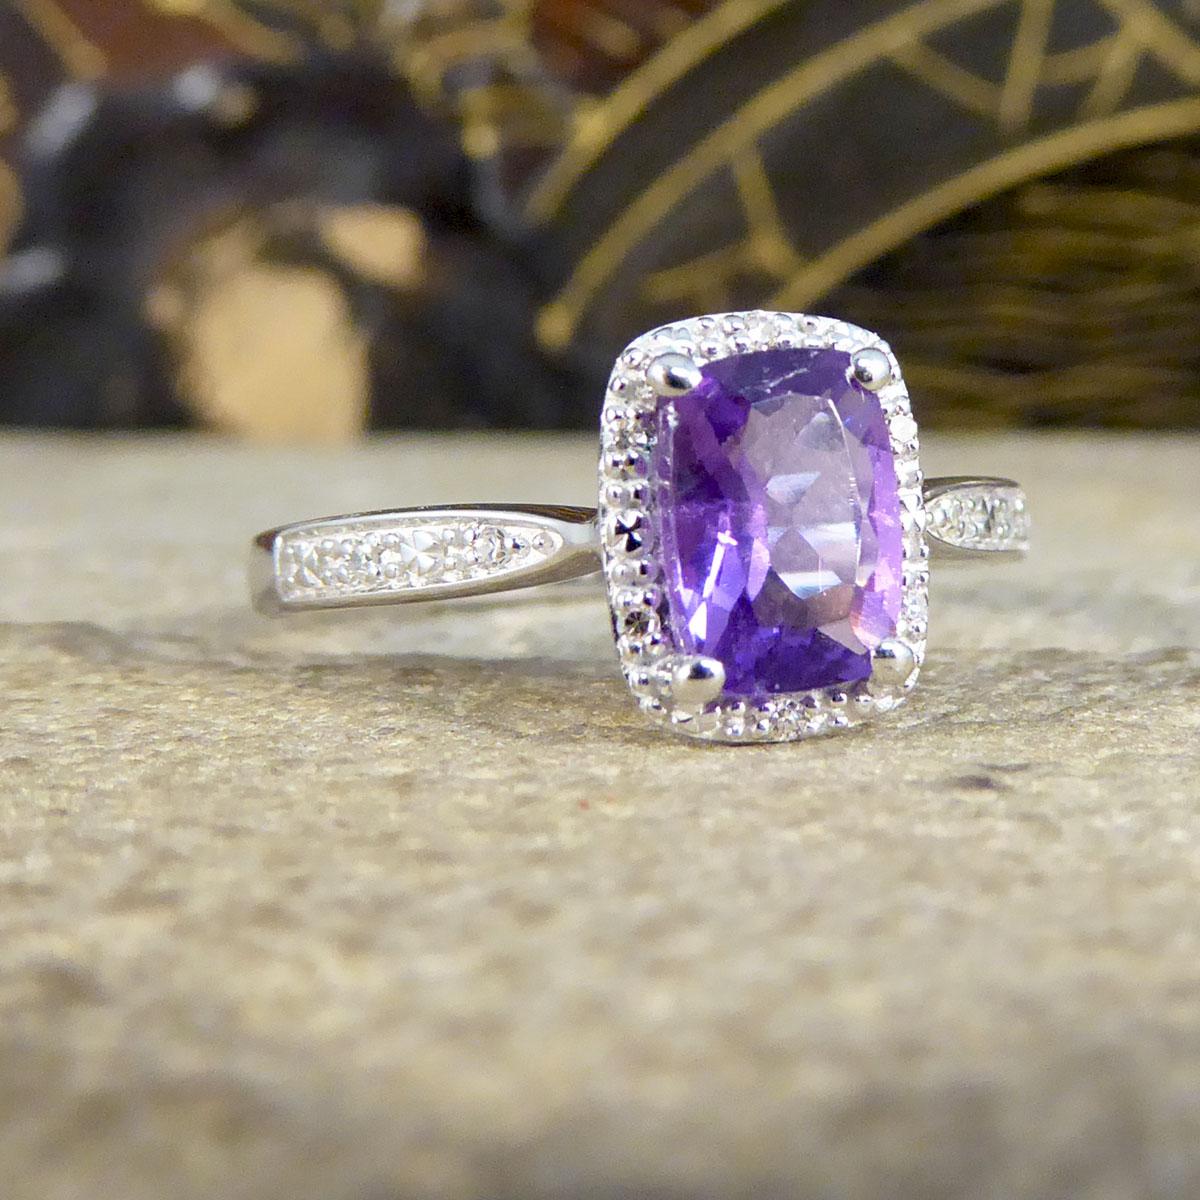 Dieser zeitgenössische Ring zeigt einen einzelnen Amethyst-Edelstein mit einer leuchtend violetten Färbung in einer Fassung mit vier Krallen. Der wunderschöne Amethyst ist von einem Illusionshalo mit 6 kleinen Diamanten umgeben, einer oben und unten